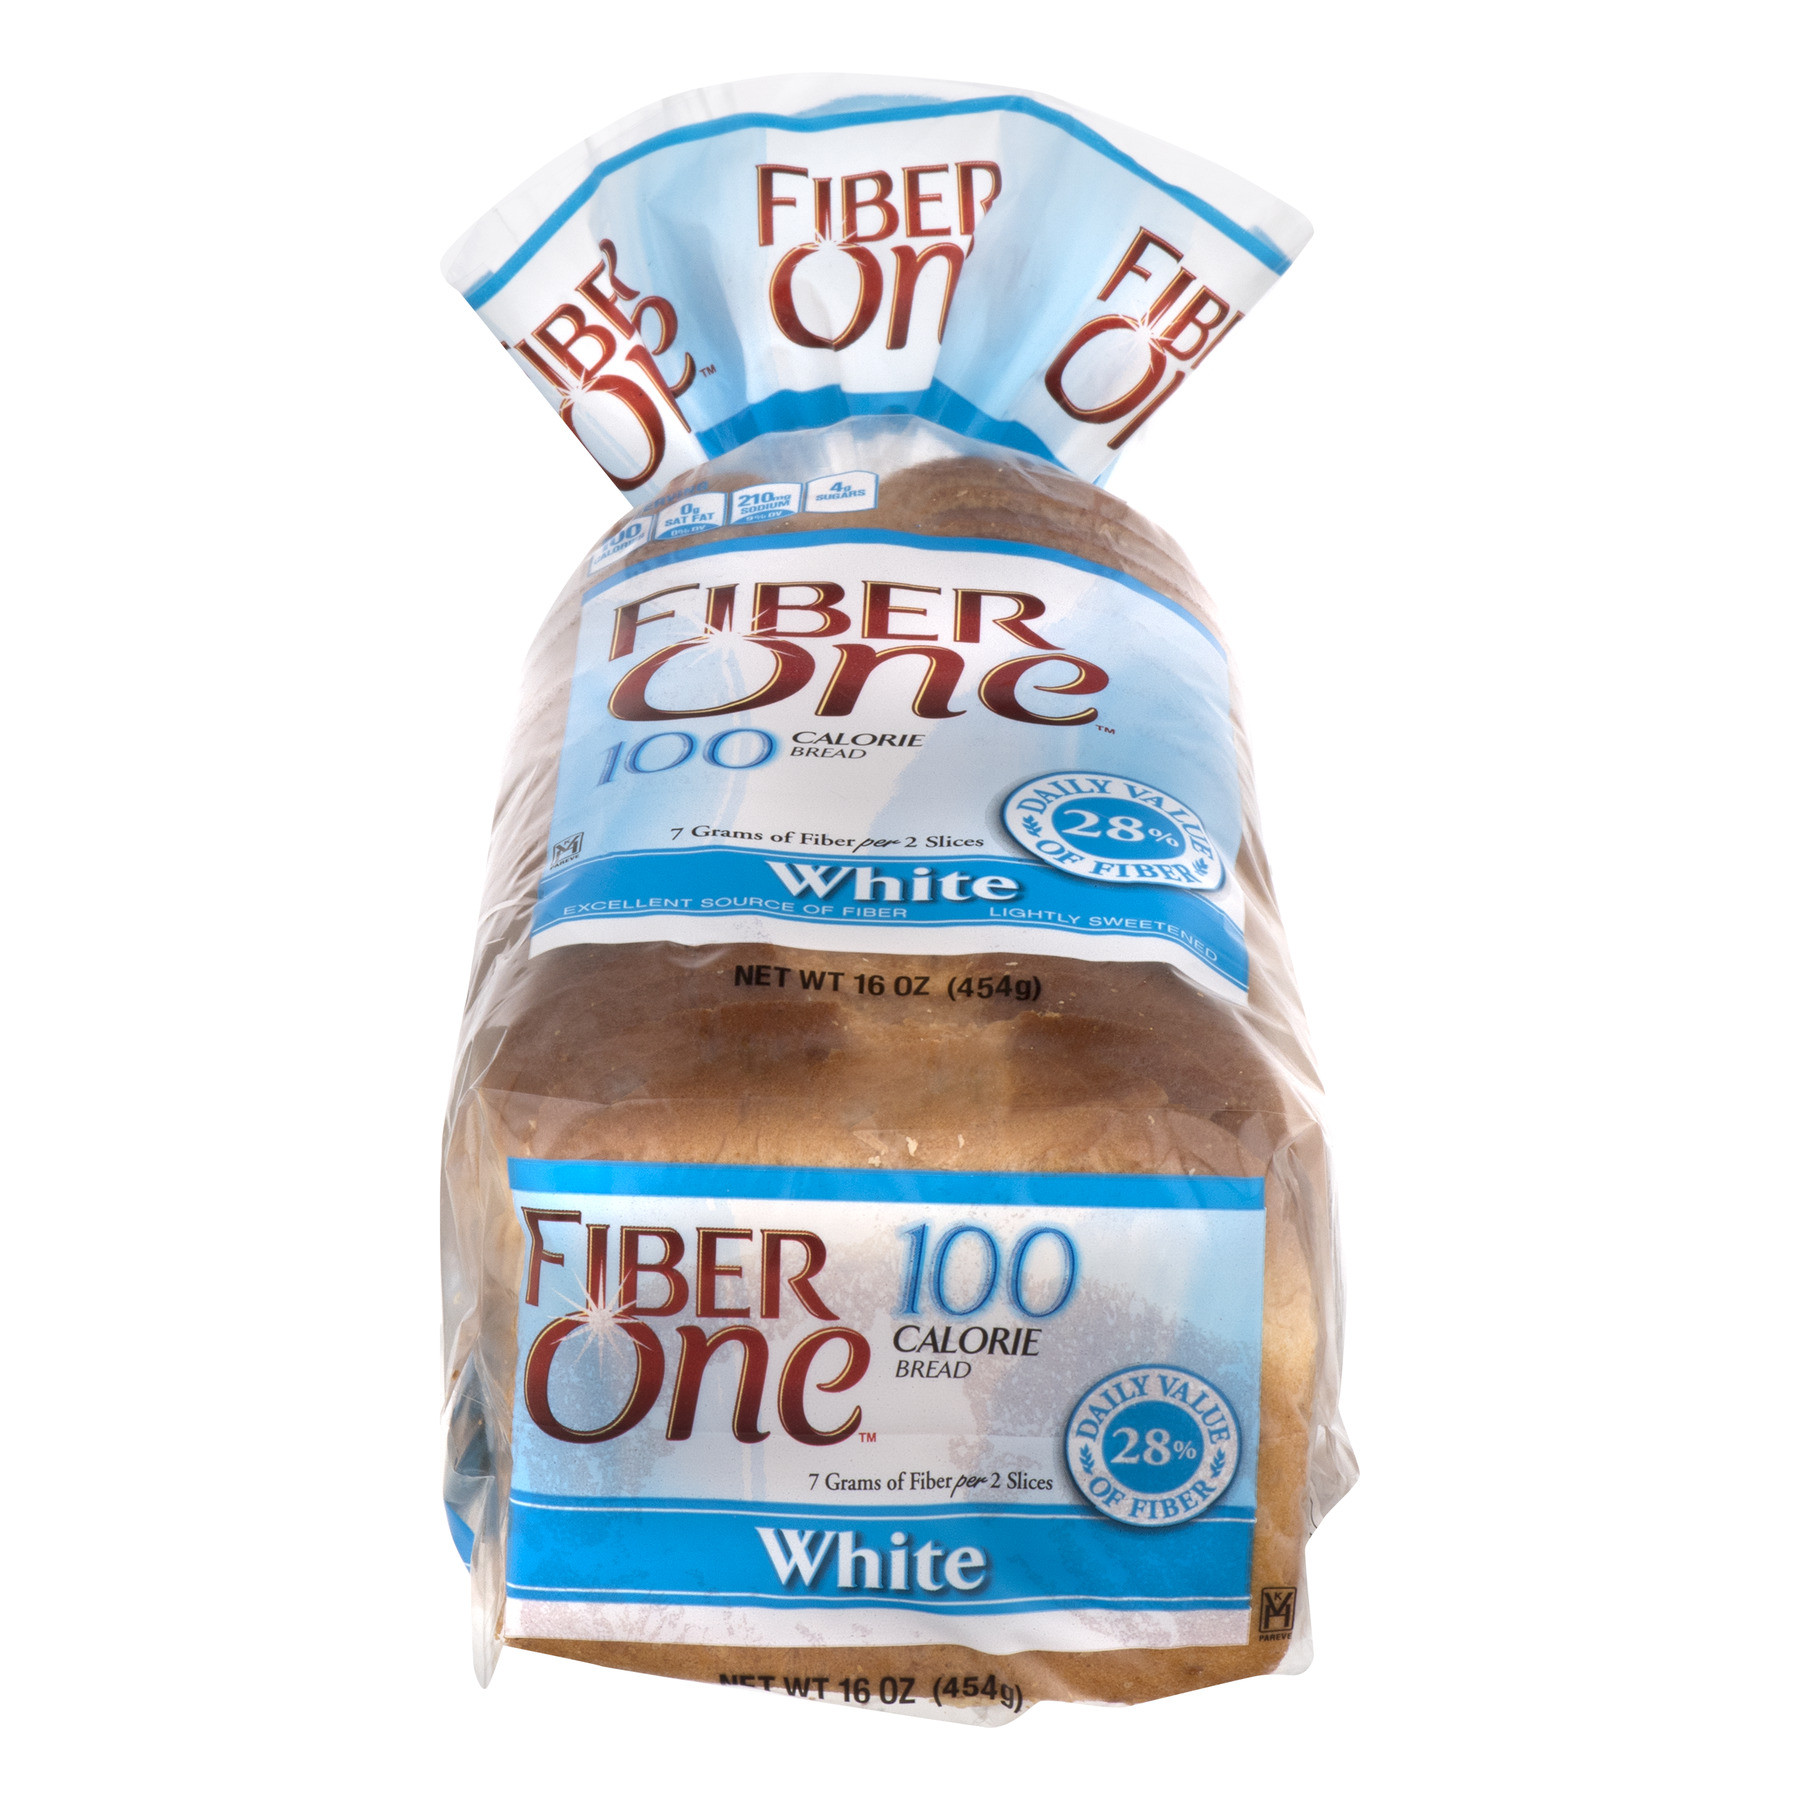 White Bread Fiber
 Fiber e 100 Calorie Bread White Walmart